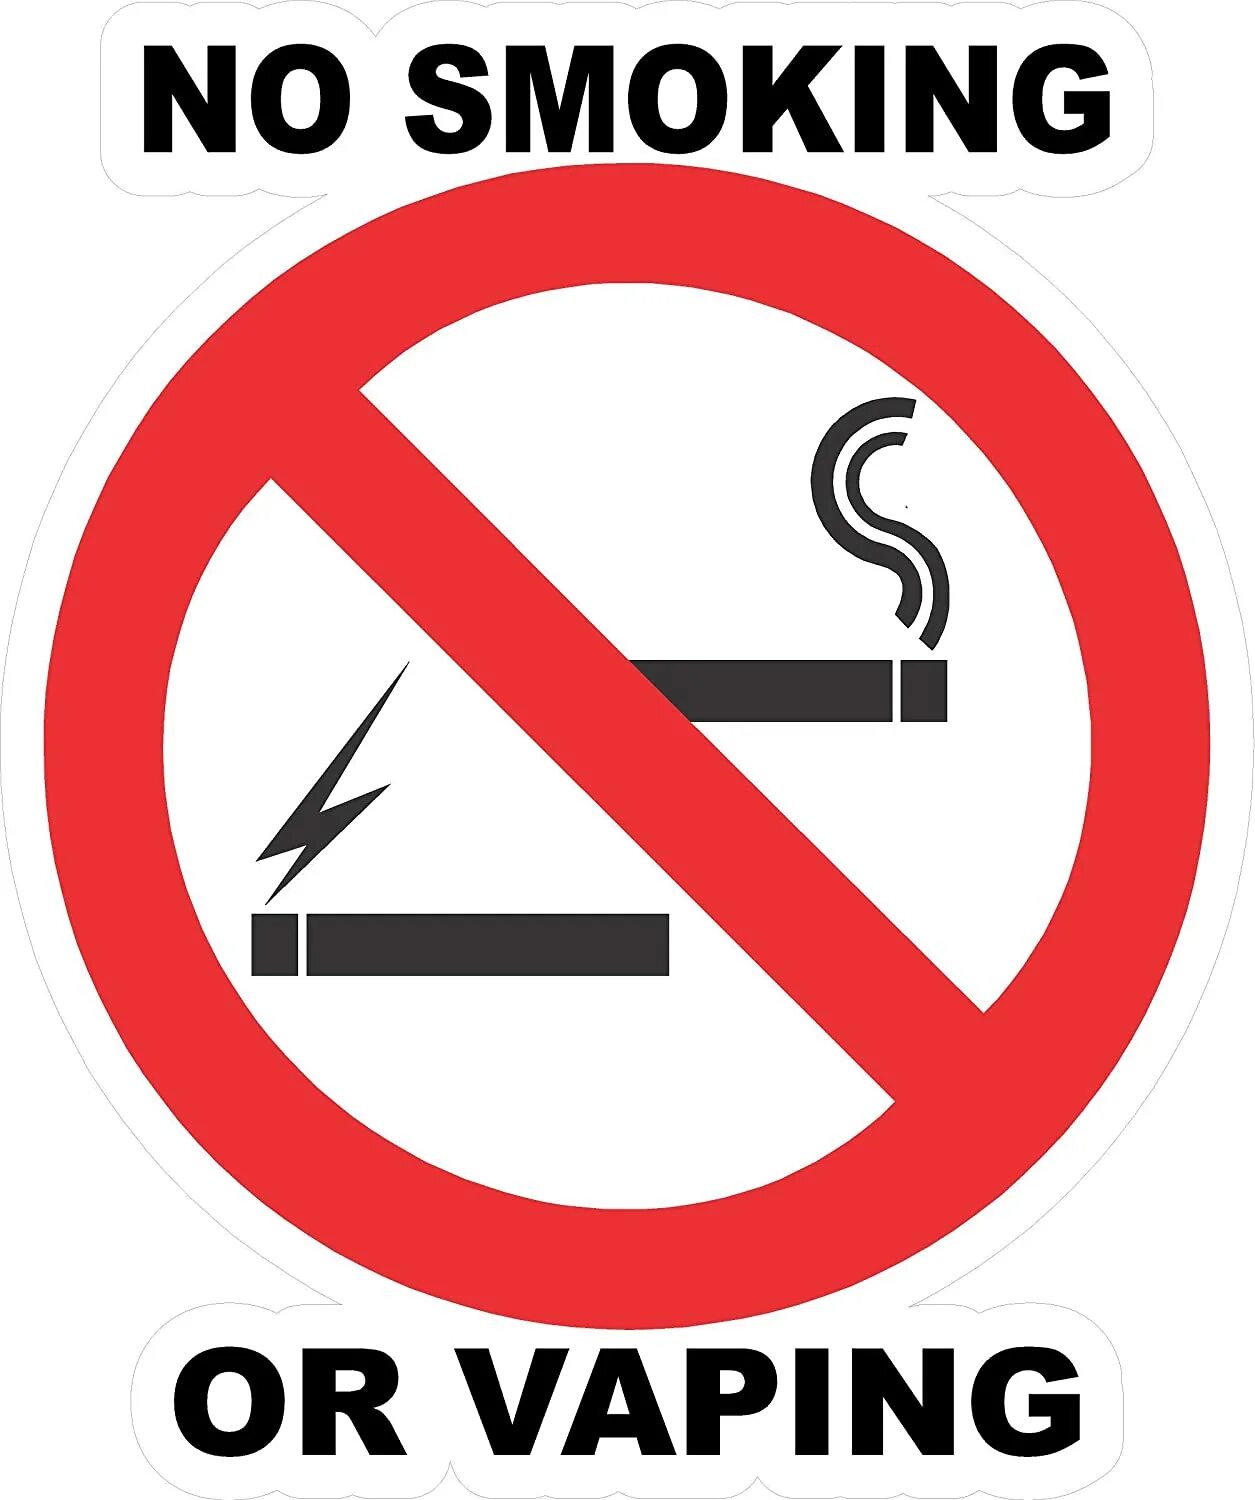 Айкос курить запрещено. Табличка о запрете курения электронных сигарет. Не курить электронные сигареты. Табличка курение сигарет и вейпов запрещено.